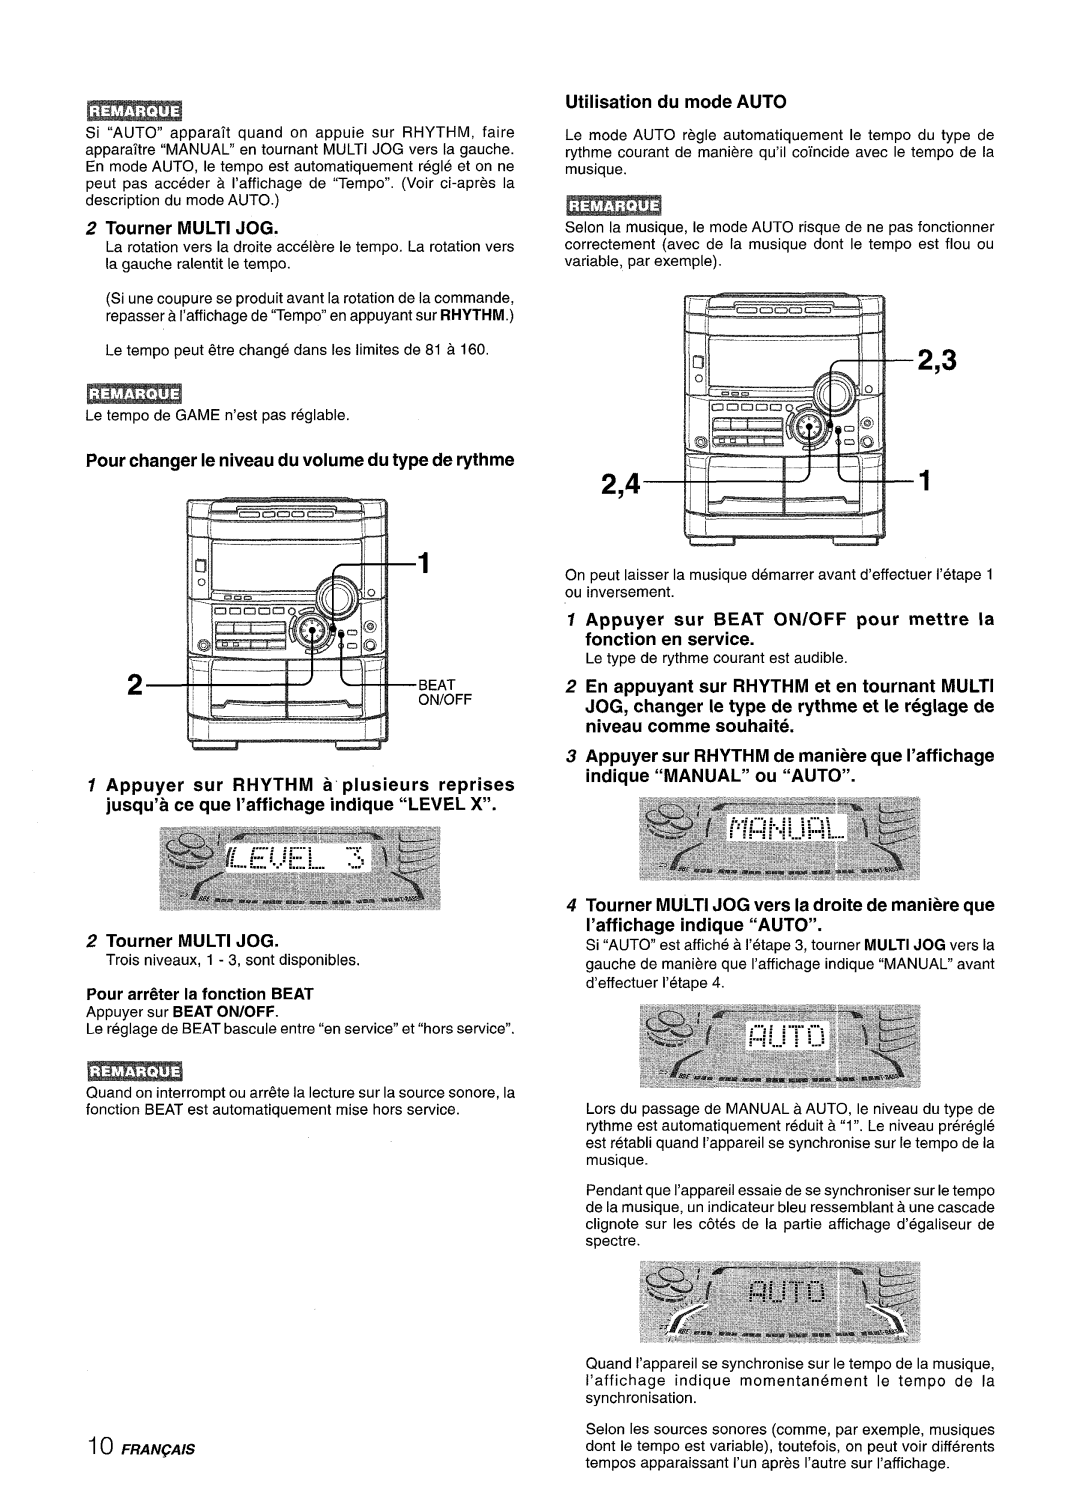 Sony NSX-A777 manual 2,41, Tourner MULTI JOG, Utilisation du mode AUTO, Pour changer Ie niveau du volume du type de rythme 